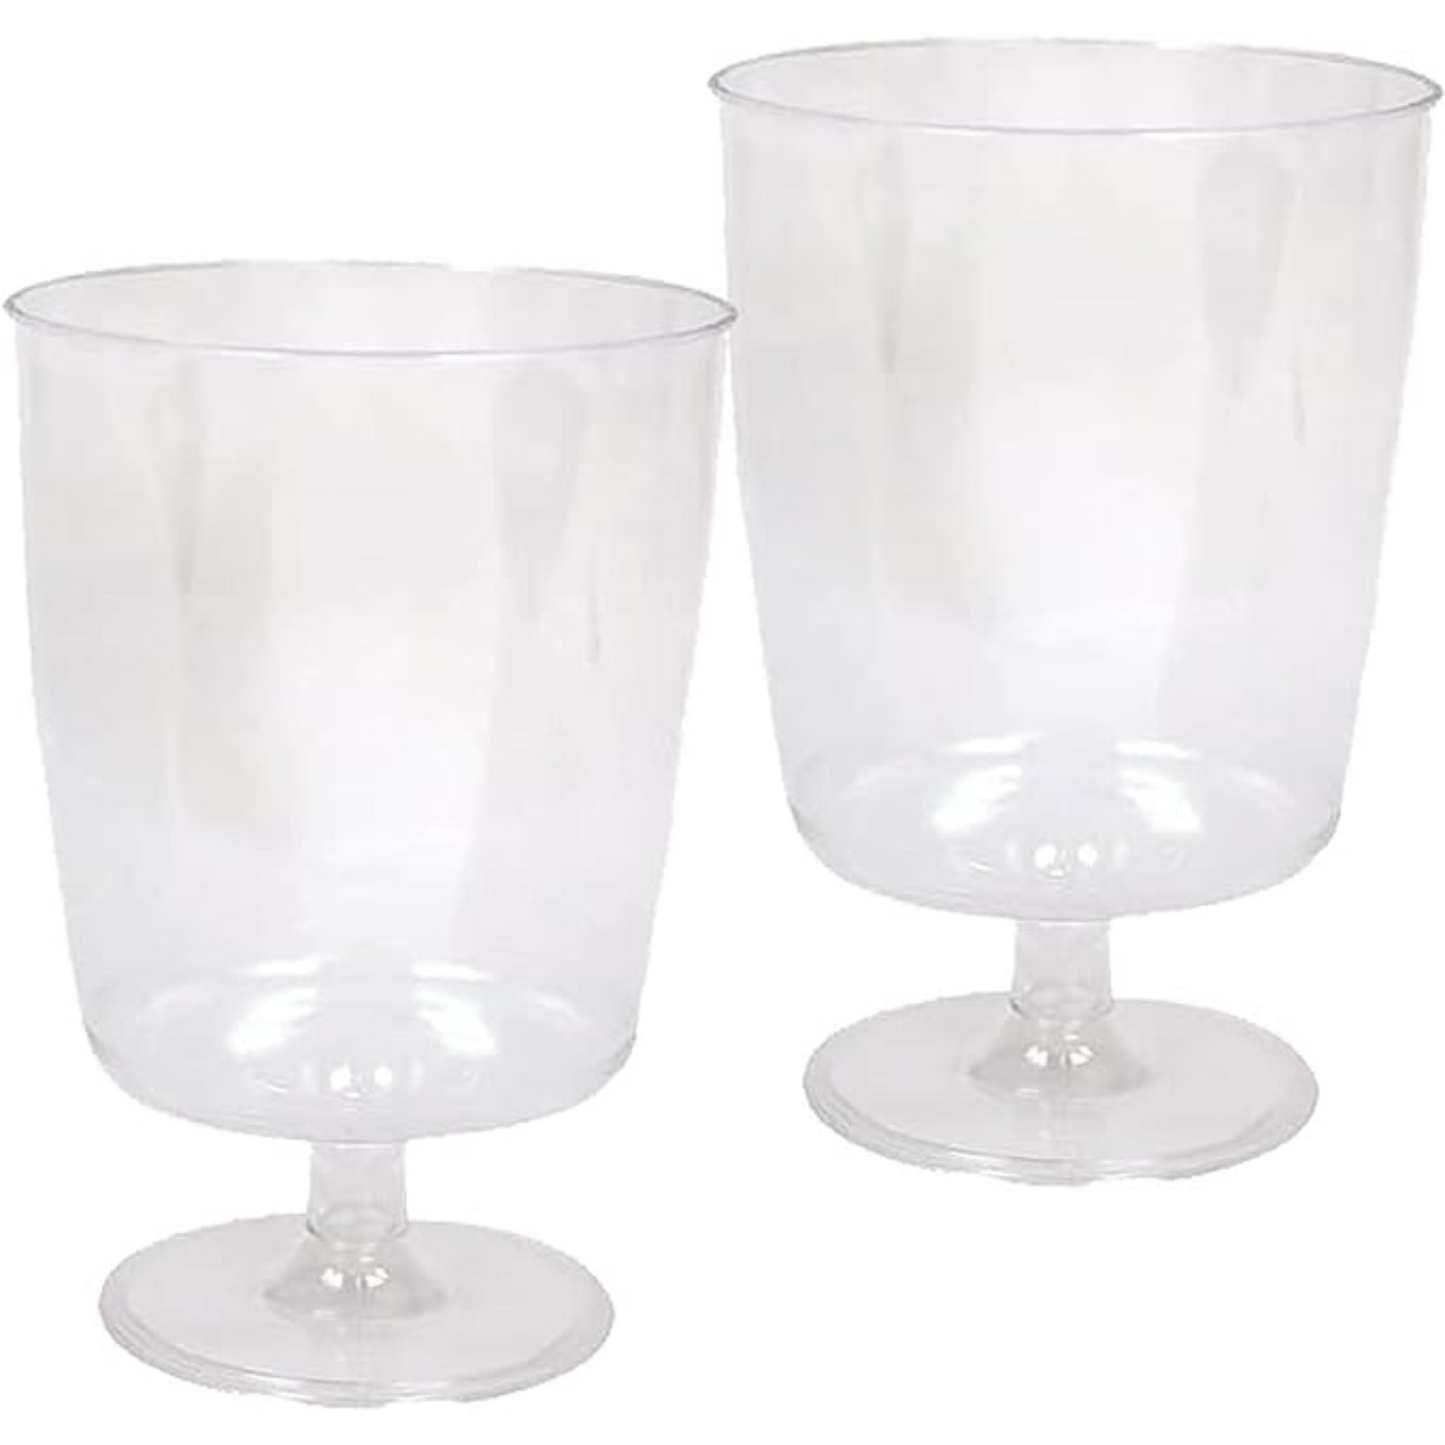 Hanna K. Signature Elegant Plastic Wine Glasses Footed 8 oz Cups Hanna K Signature   